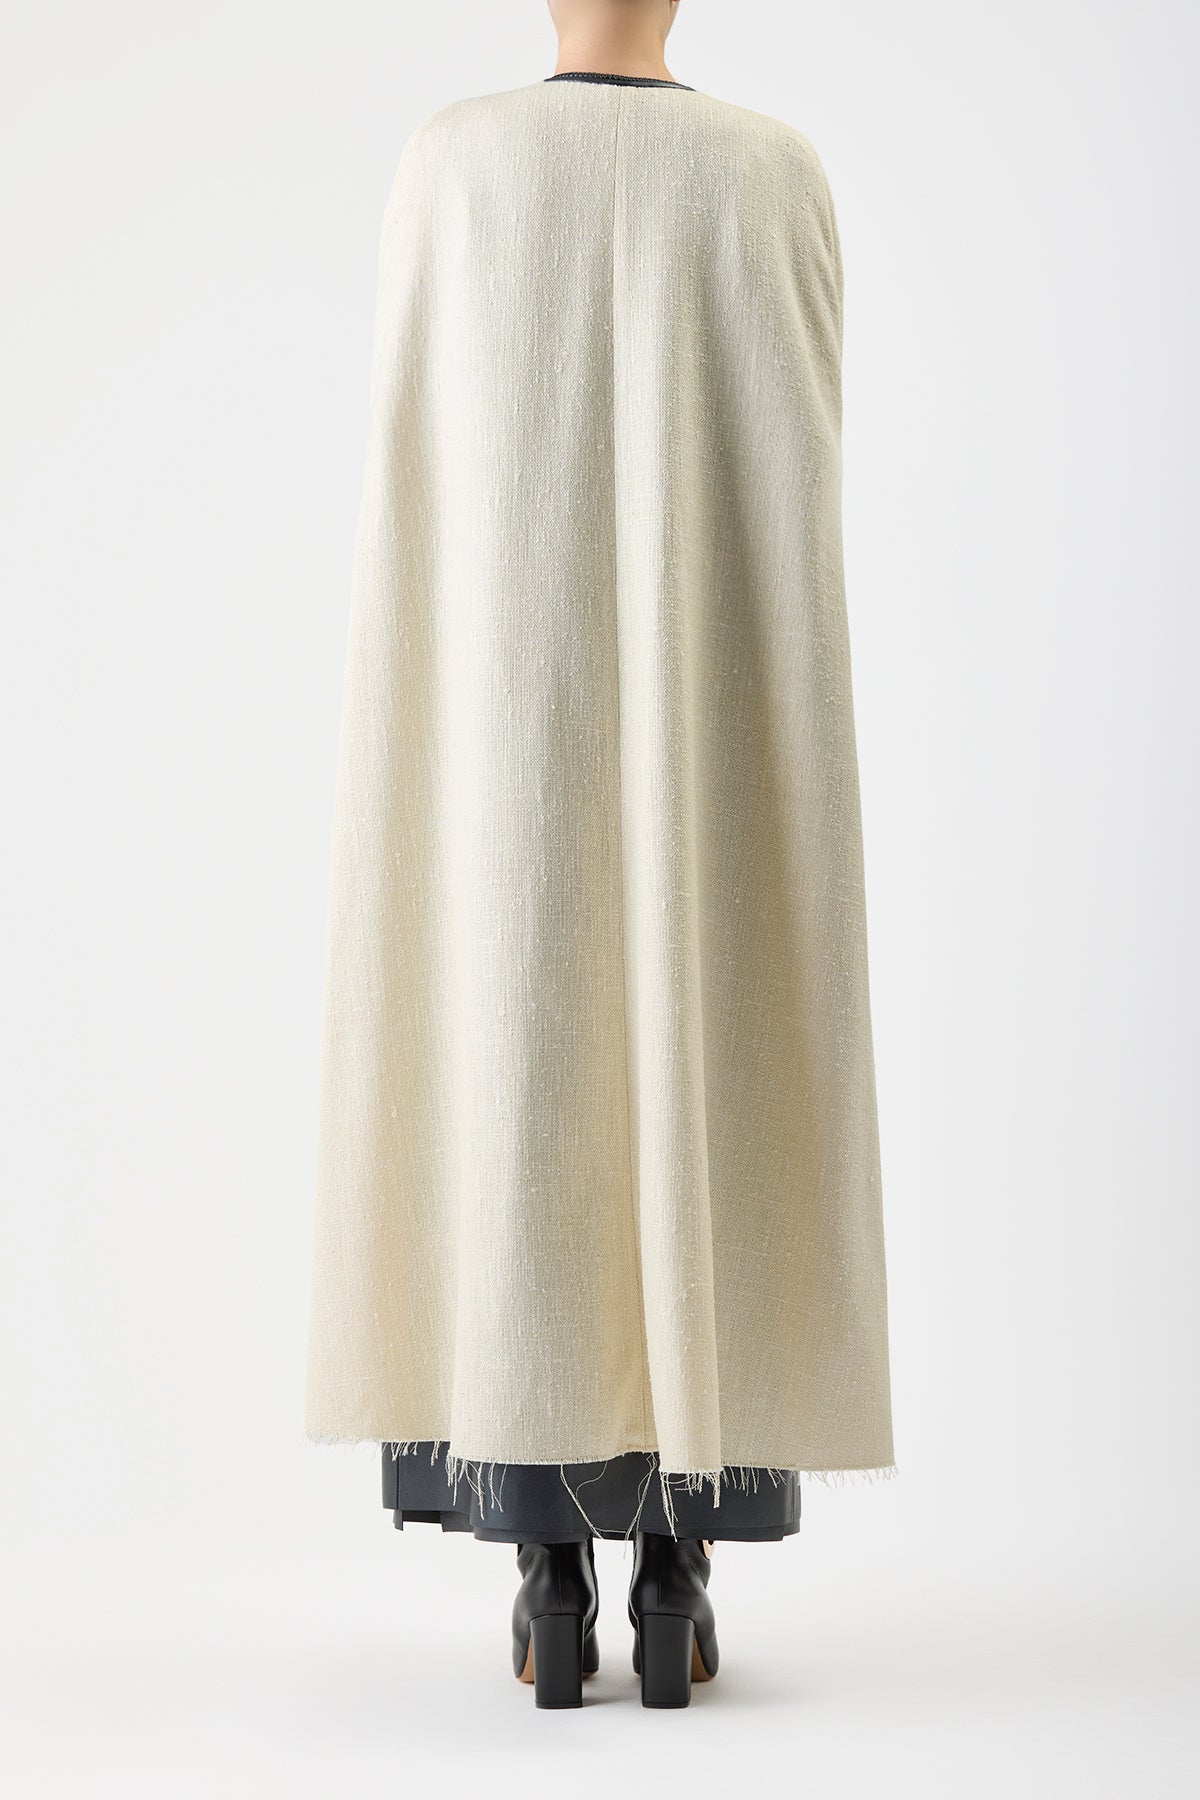 Corinth Cape in Soft Silk Wool